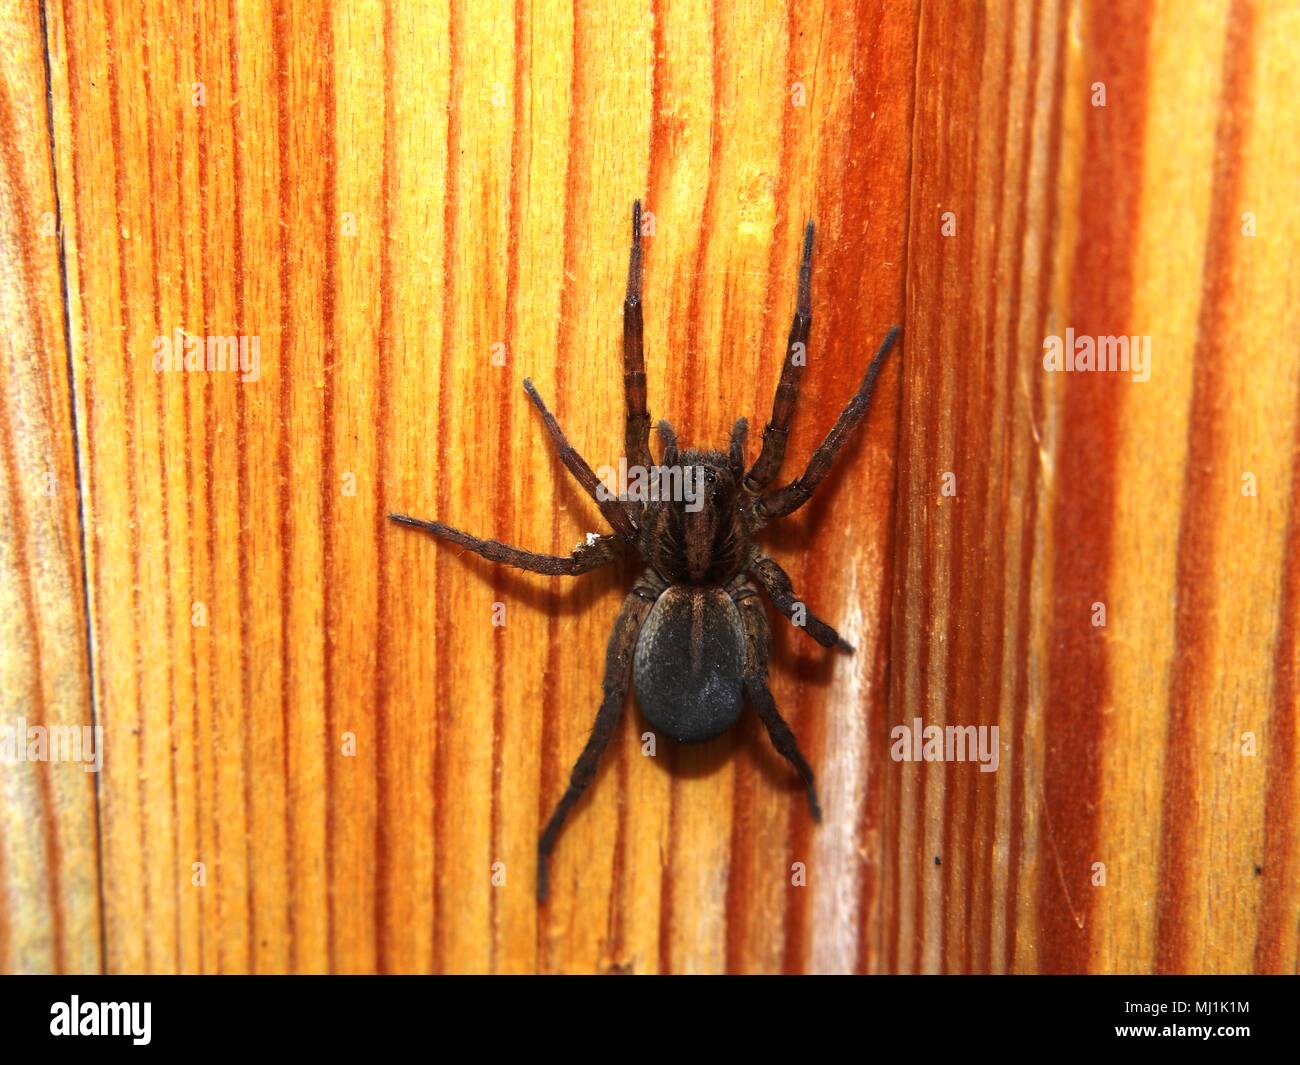 Schwarze Spinne sitzt auf einem Holz- Oberfläche. Arthropoden. Makro Modus. Stockfoto